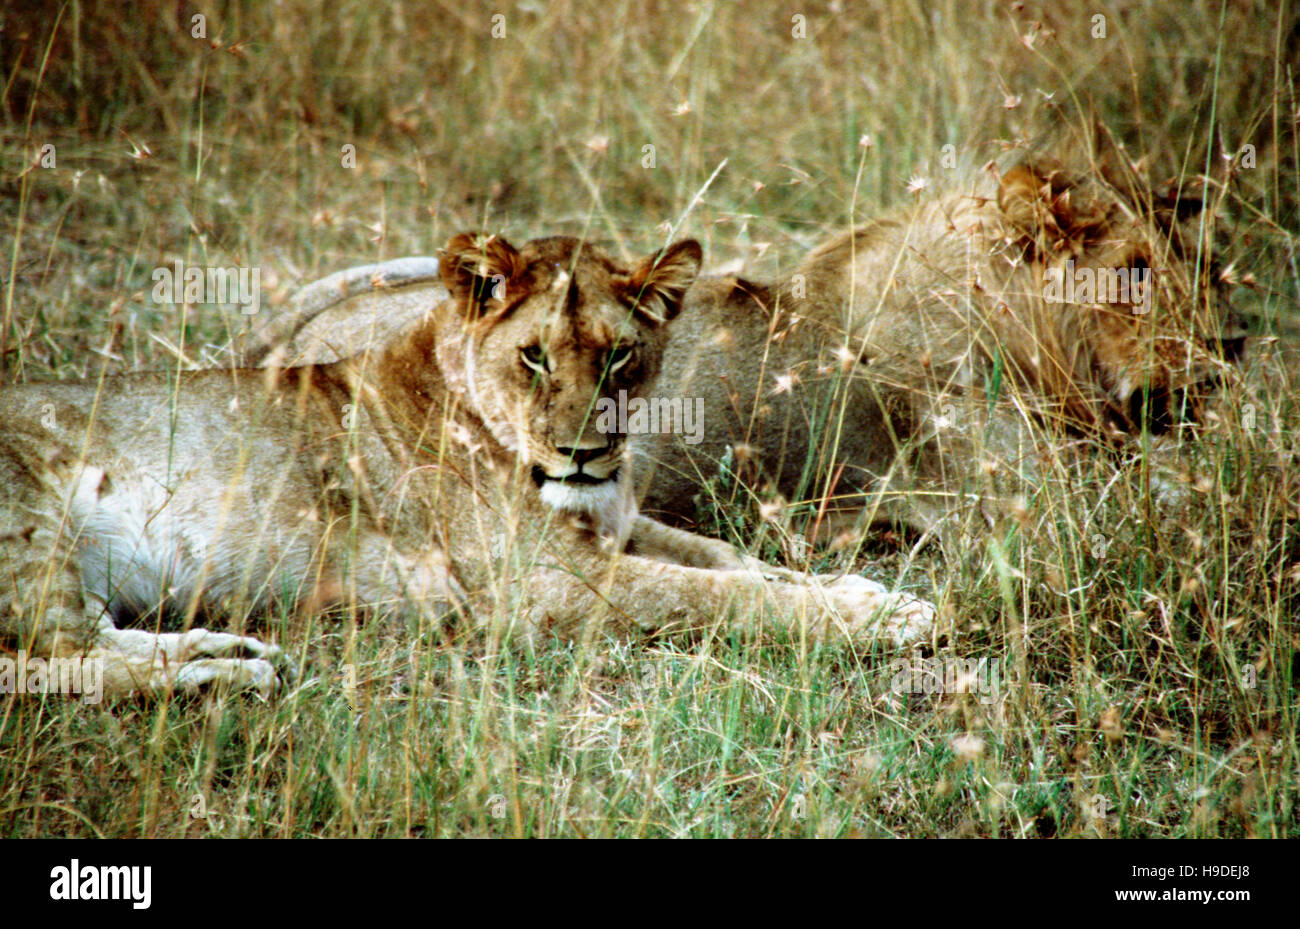 Lion (Panthera leo), femme reposant sur une termitière, Masai Mara National Reserve, Kenya, Afrique. Deux lionnes reposant sur les plaines du parc. T Banque D'Images